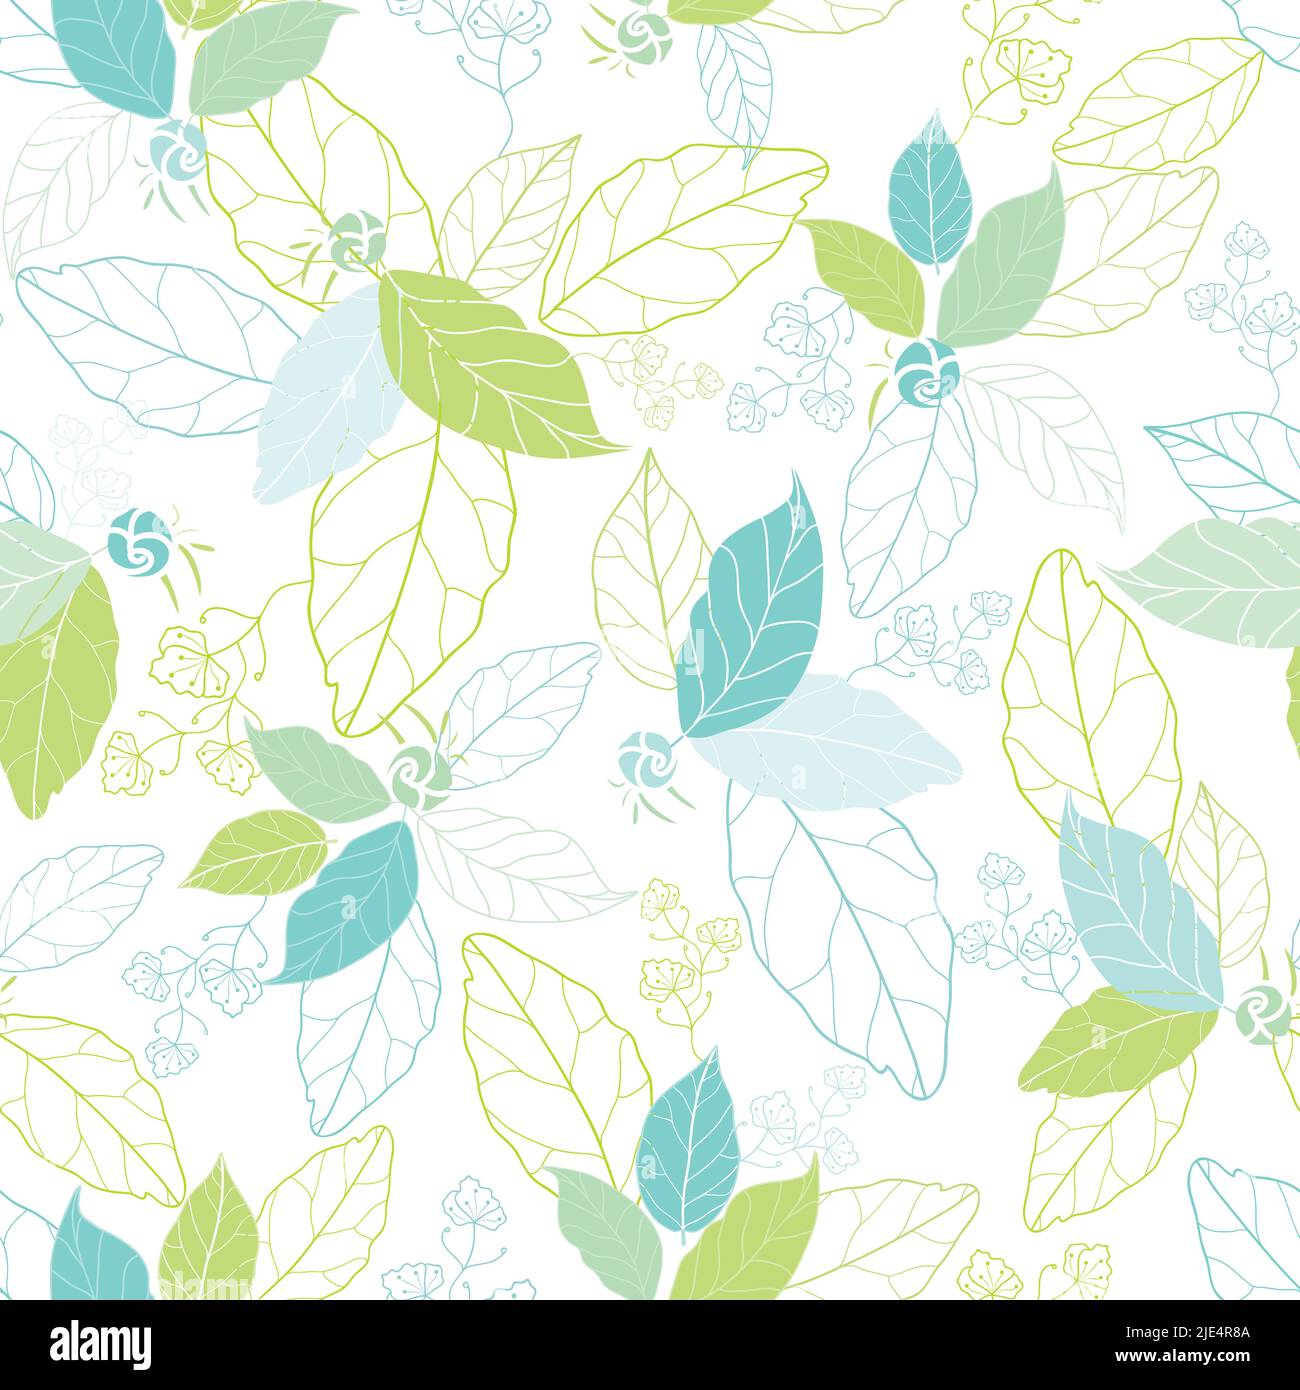 Blaugrüne Frühlingsblätter. Blumen Vektor wiederholen Muster Hintergrund. Linienkunst Texturmuster. Von Hand gezeichnet. Oberflächengestaltung Stock Vektor